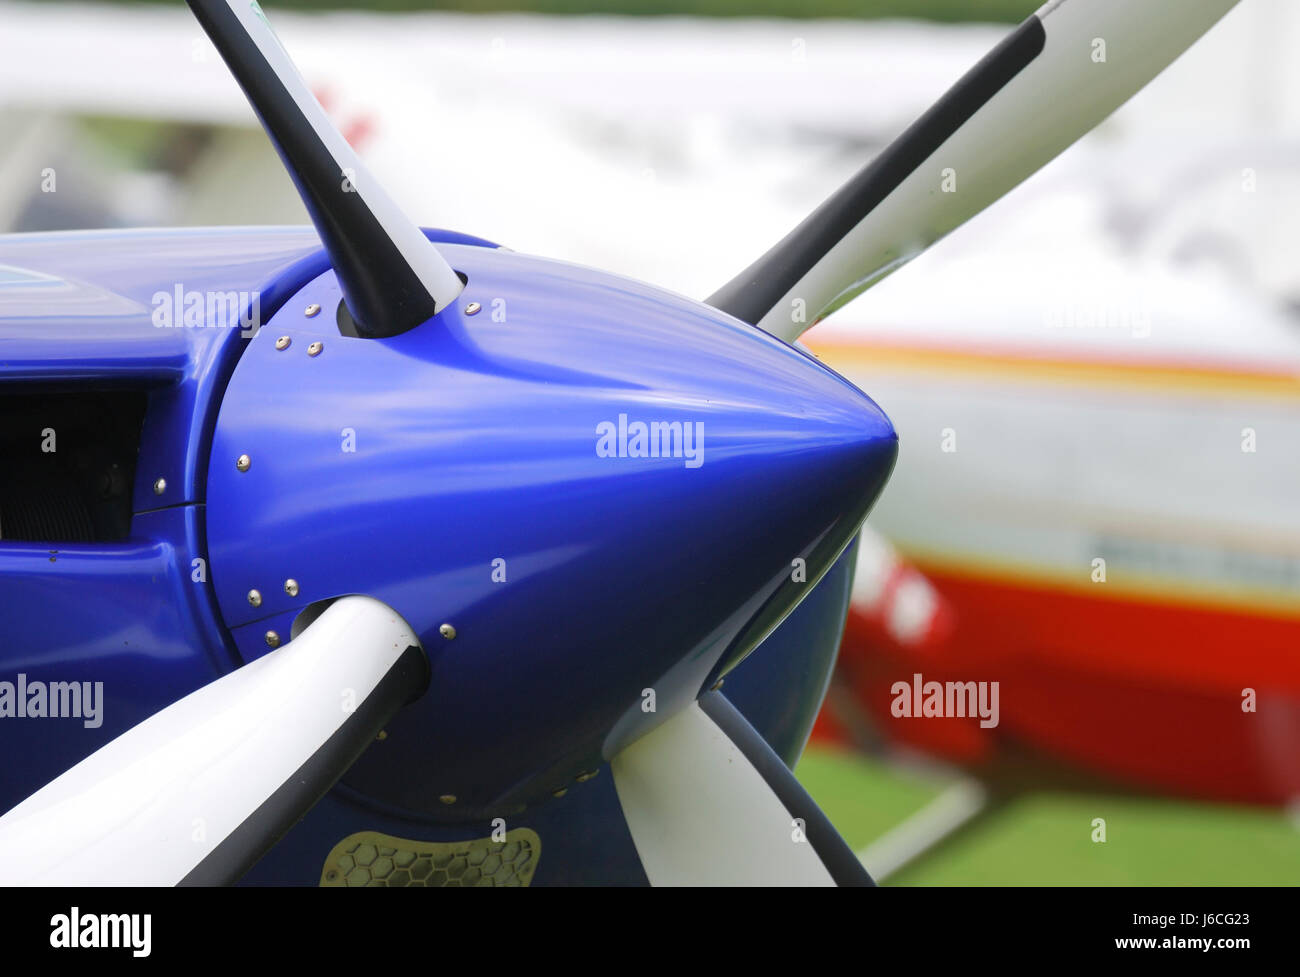 Moteur d'entraînement moteur hélice avion avion avion avion de lame Banque D'Images